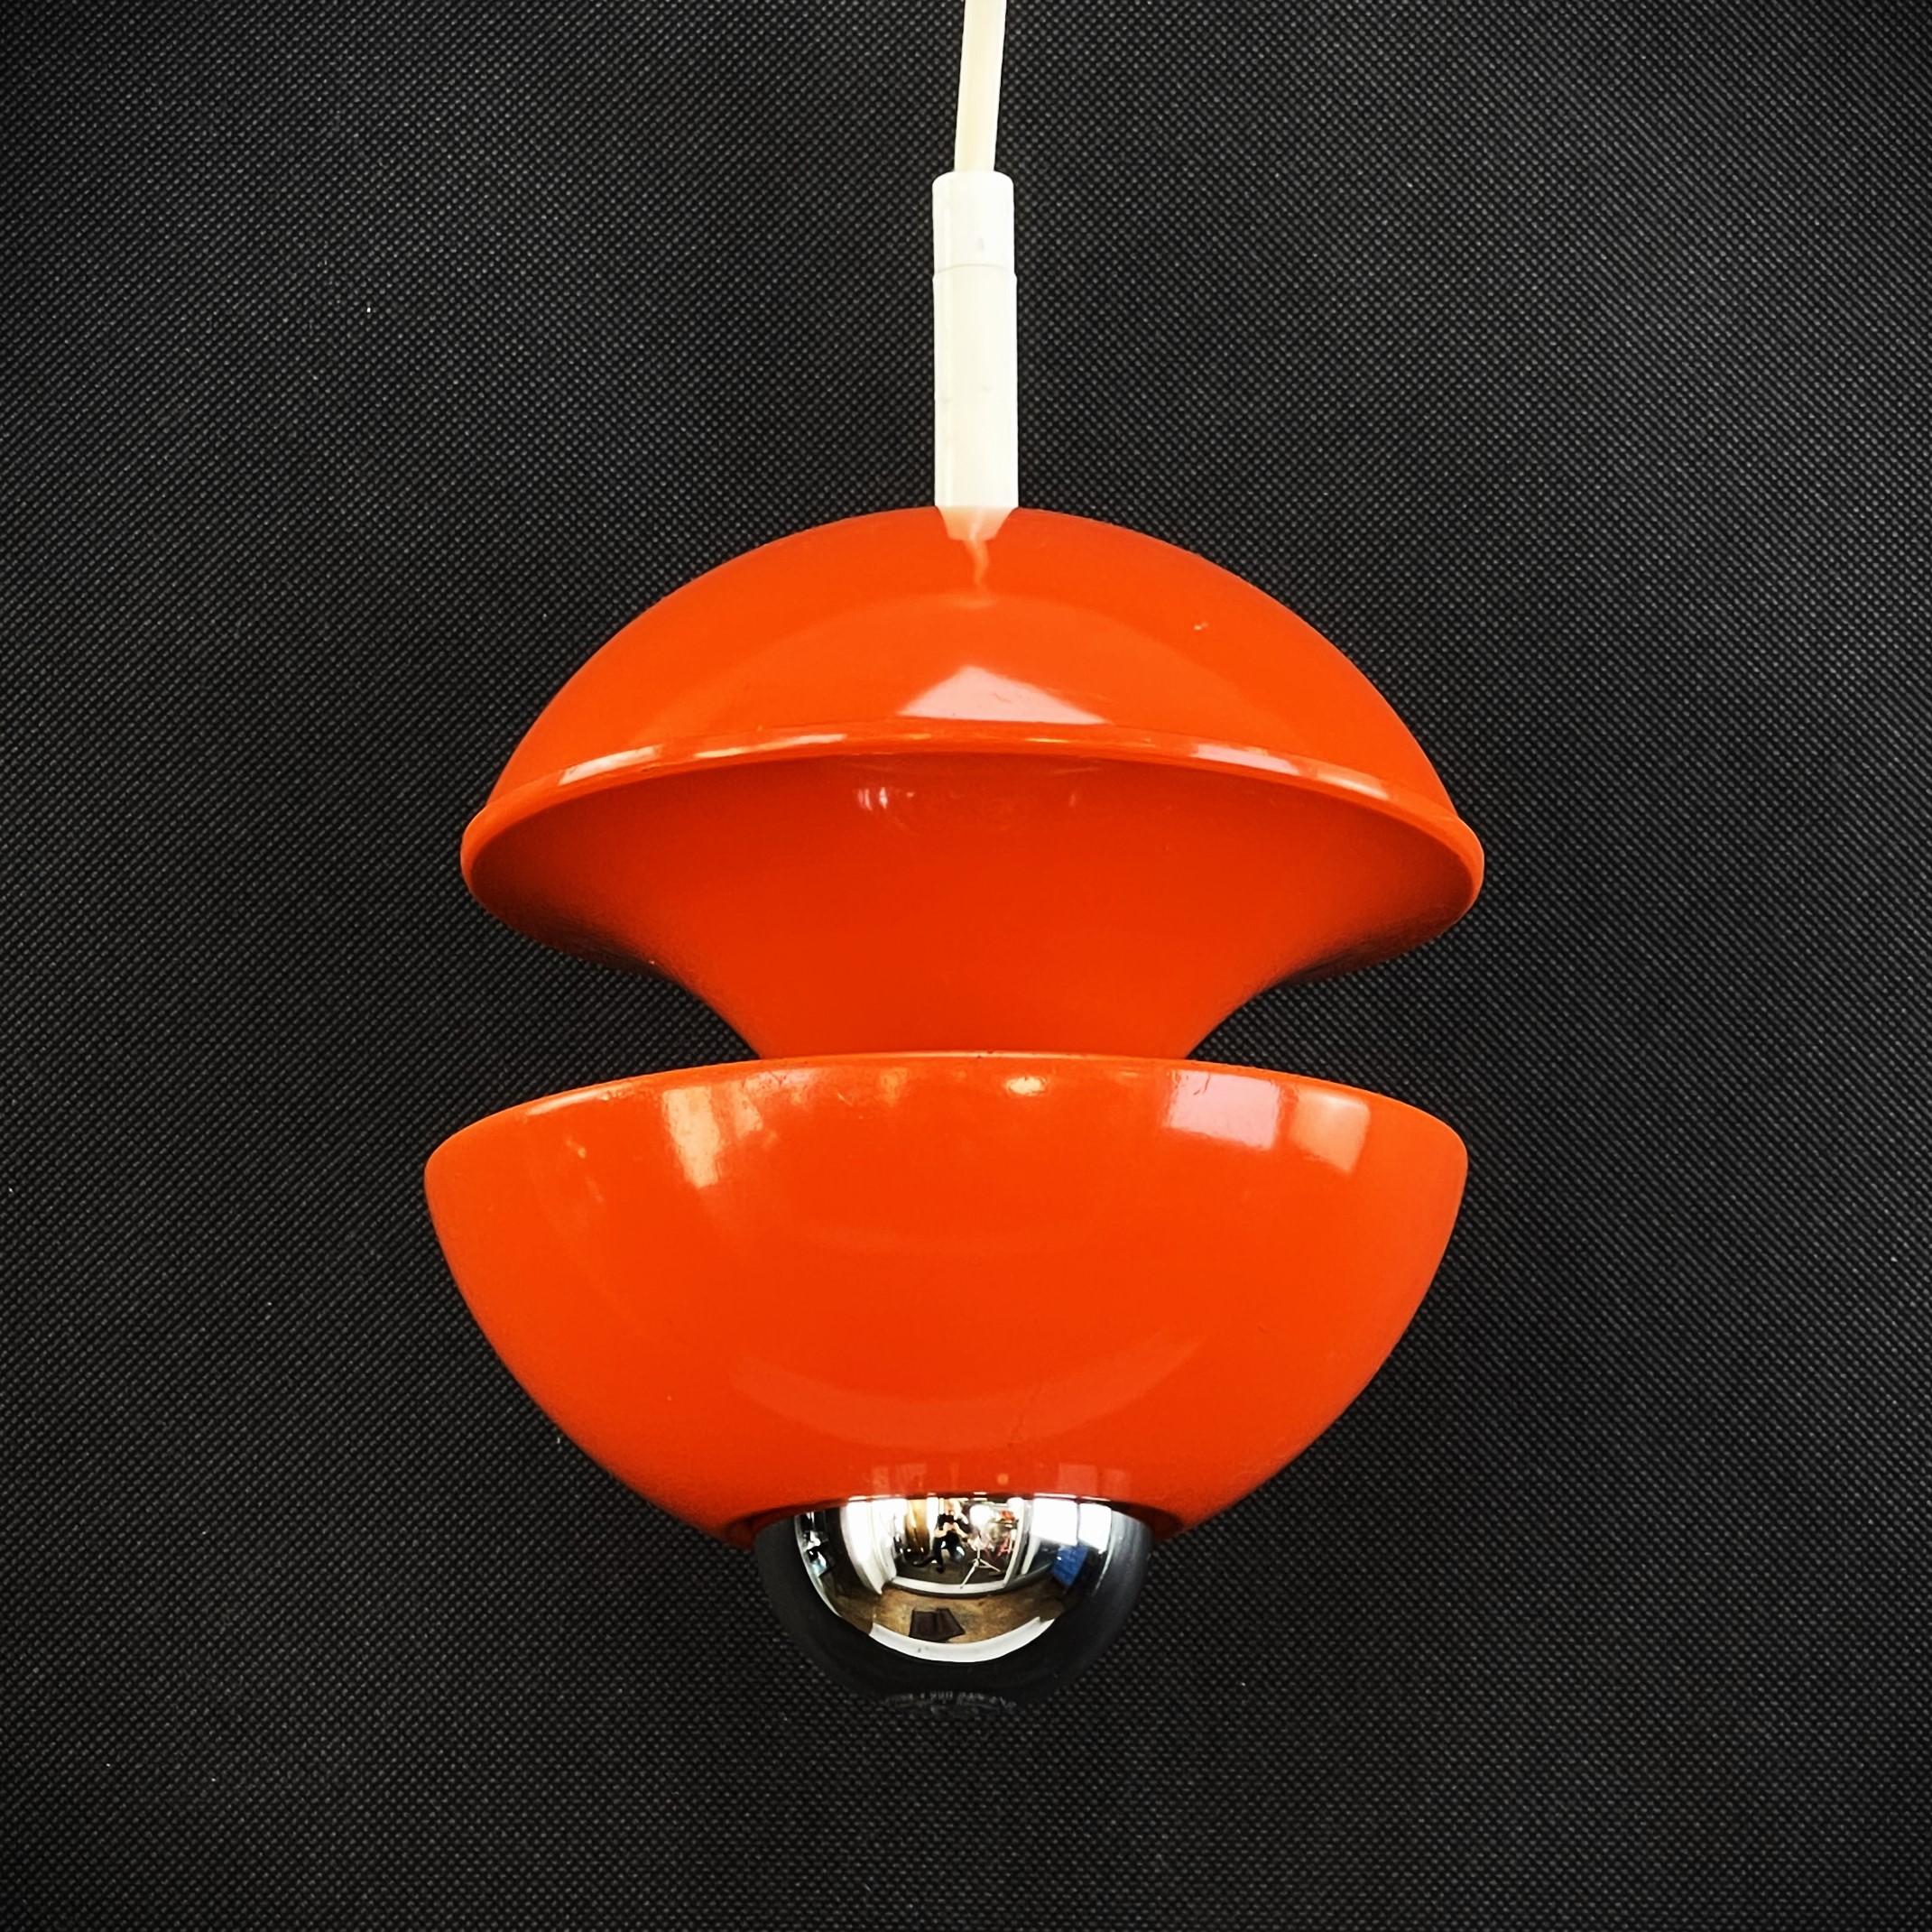 Magnifique plafonnier SPACE AGE de Richard Essig- 1970

La lampe suspendue de Kaiser Leuchte, conçue par Klaus Hempel dans un abat-jour orange accrocheur, est un exemple remarquable de design de lampe contemporain. Avec une combinaison unique de